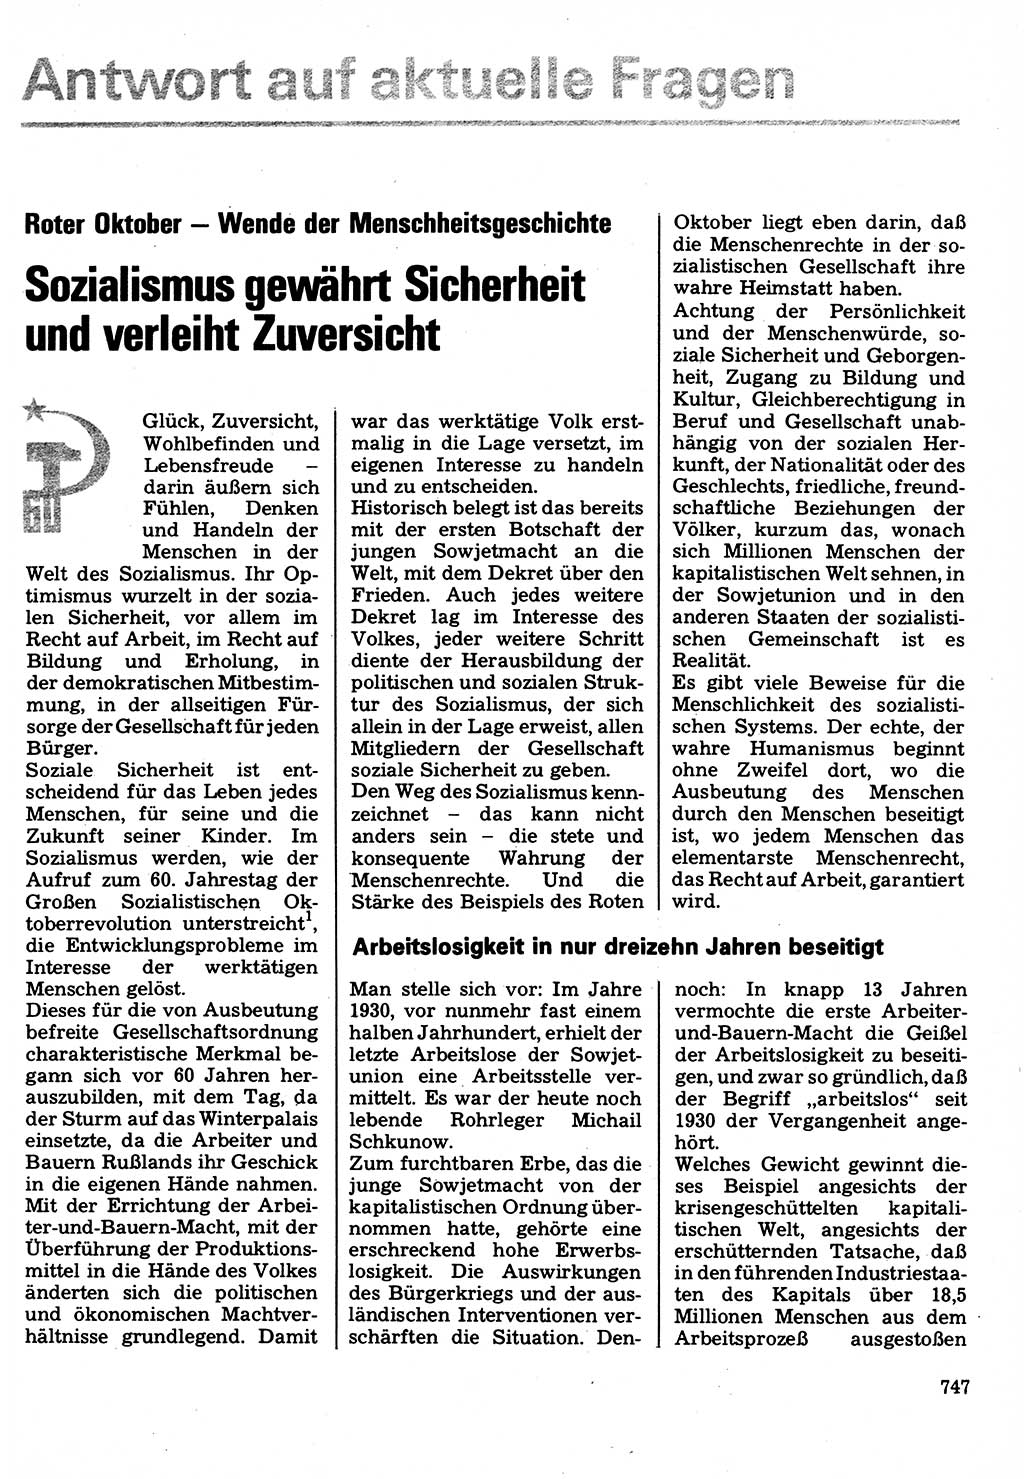 Neuer Weg (NW), Organ des Zentralkomitees (ZK) der SED (Sozialistische Einheitspartei Deutschlands) für Fragen des Parteilebens, 32. Jahrgang [Deutsche Demokratische Republik (DDR)] 1977, Seite 747 (NW ZK SED DDR 1977, S. 747)